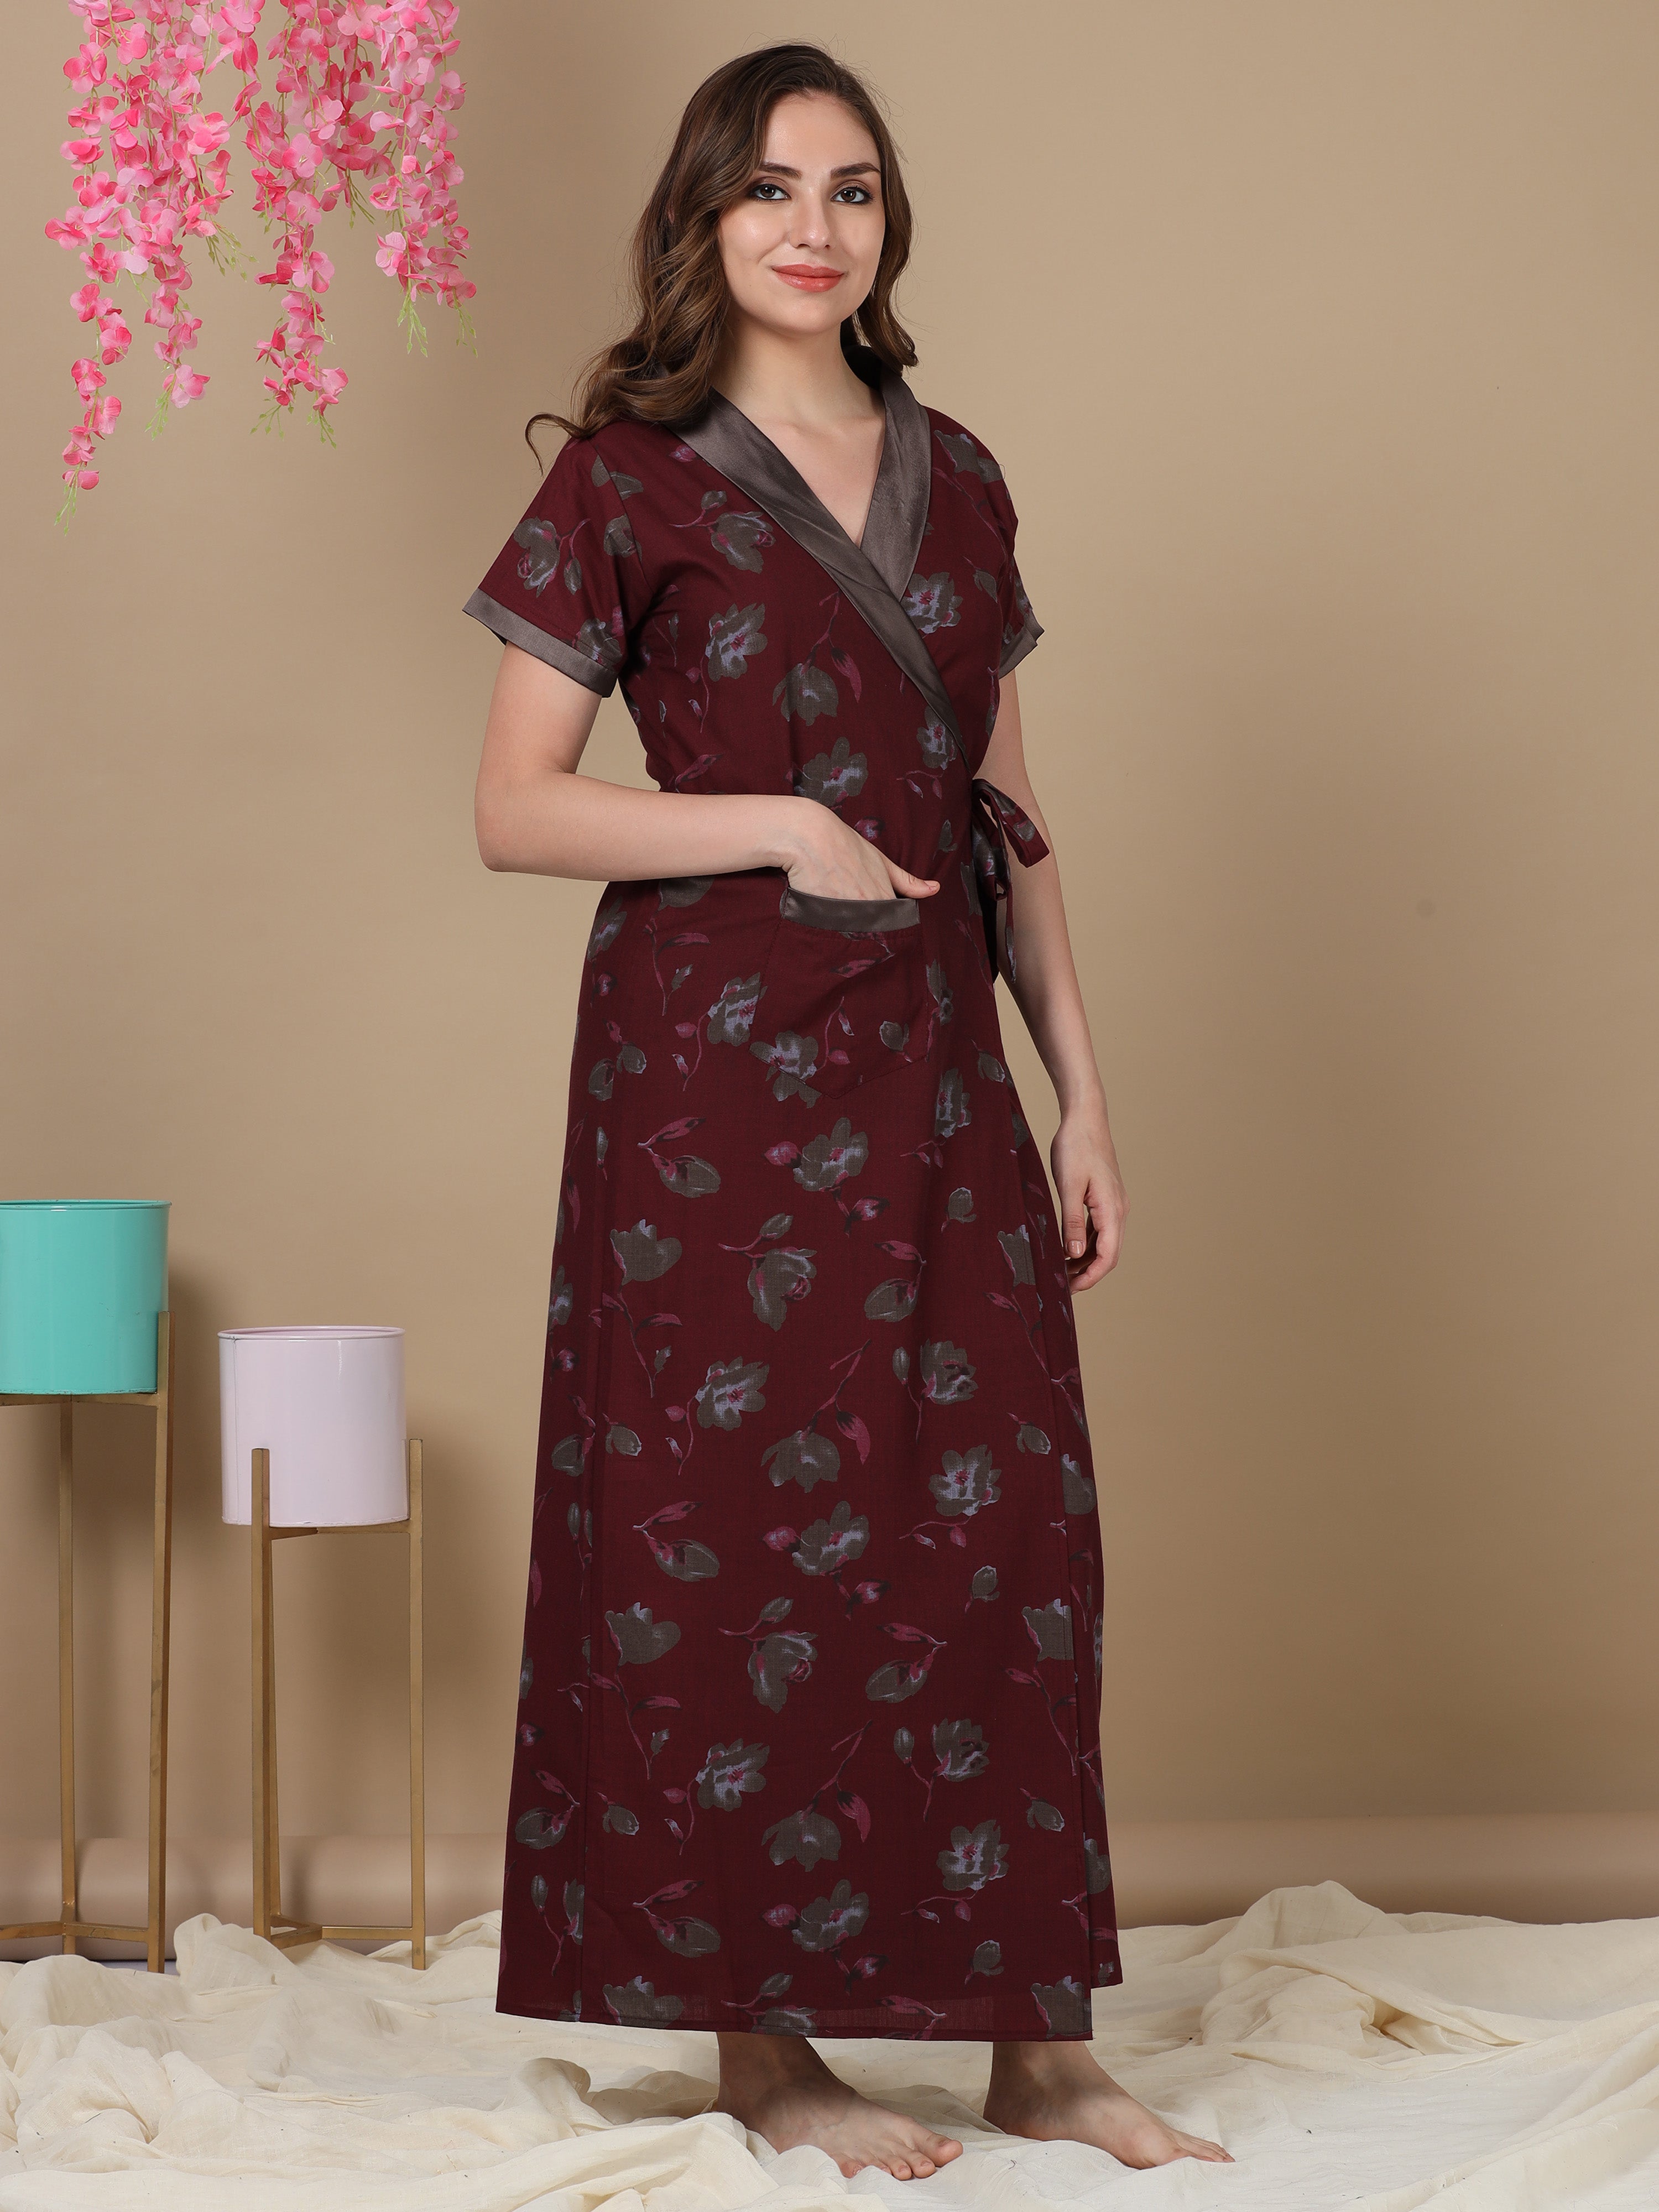 Mischa Classic Smoking Robe - Long Silk Night Gown | NK IMODE | Silk robe  long, Smoking robe, Silk charmeuse